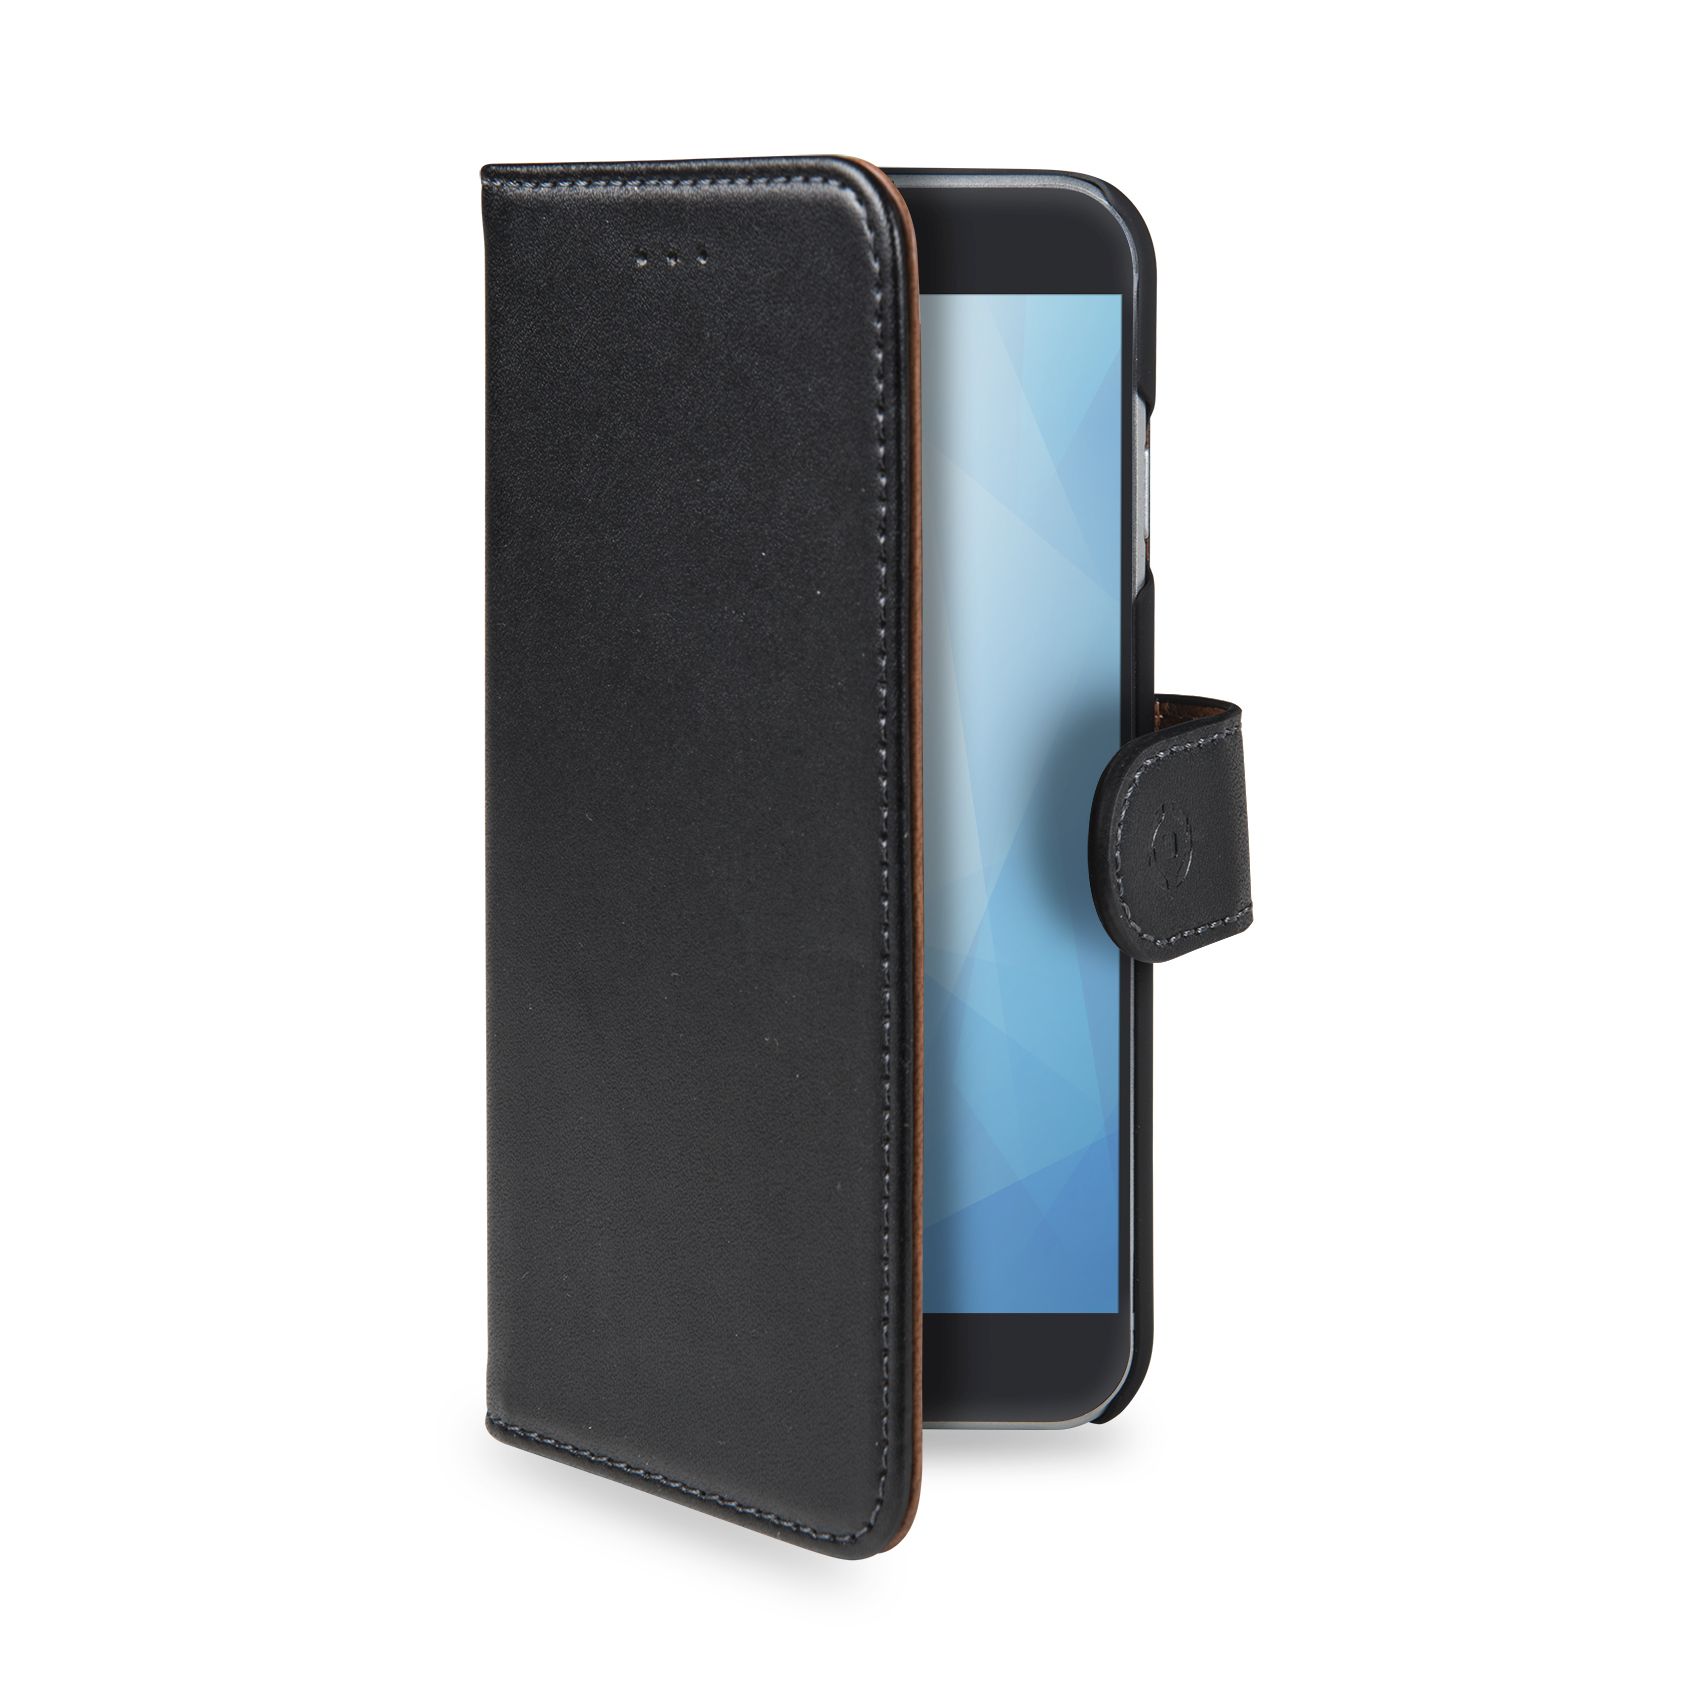 Flipové pouzdro Celly Wally pro Nokia 6 (2018) černé